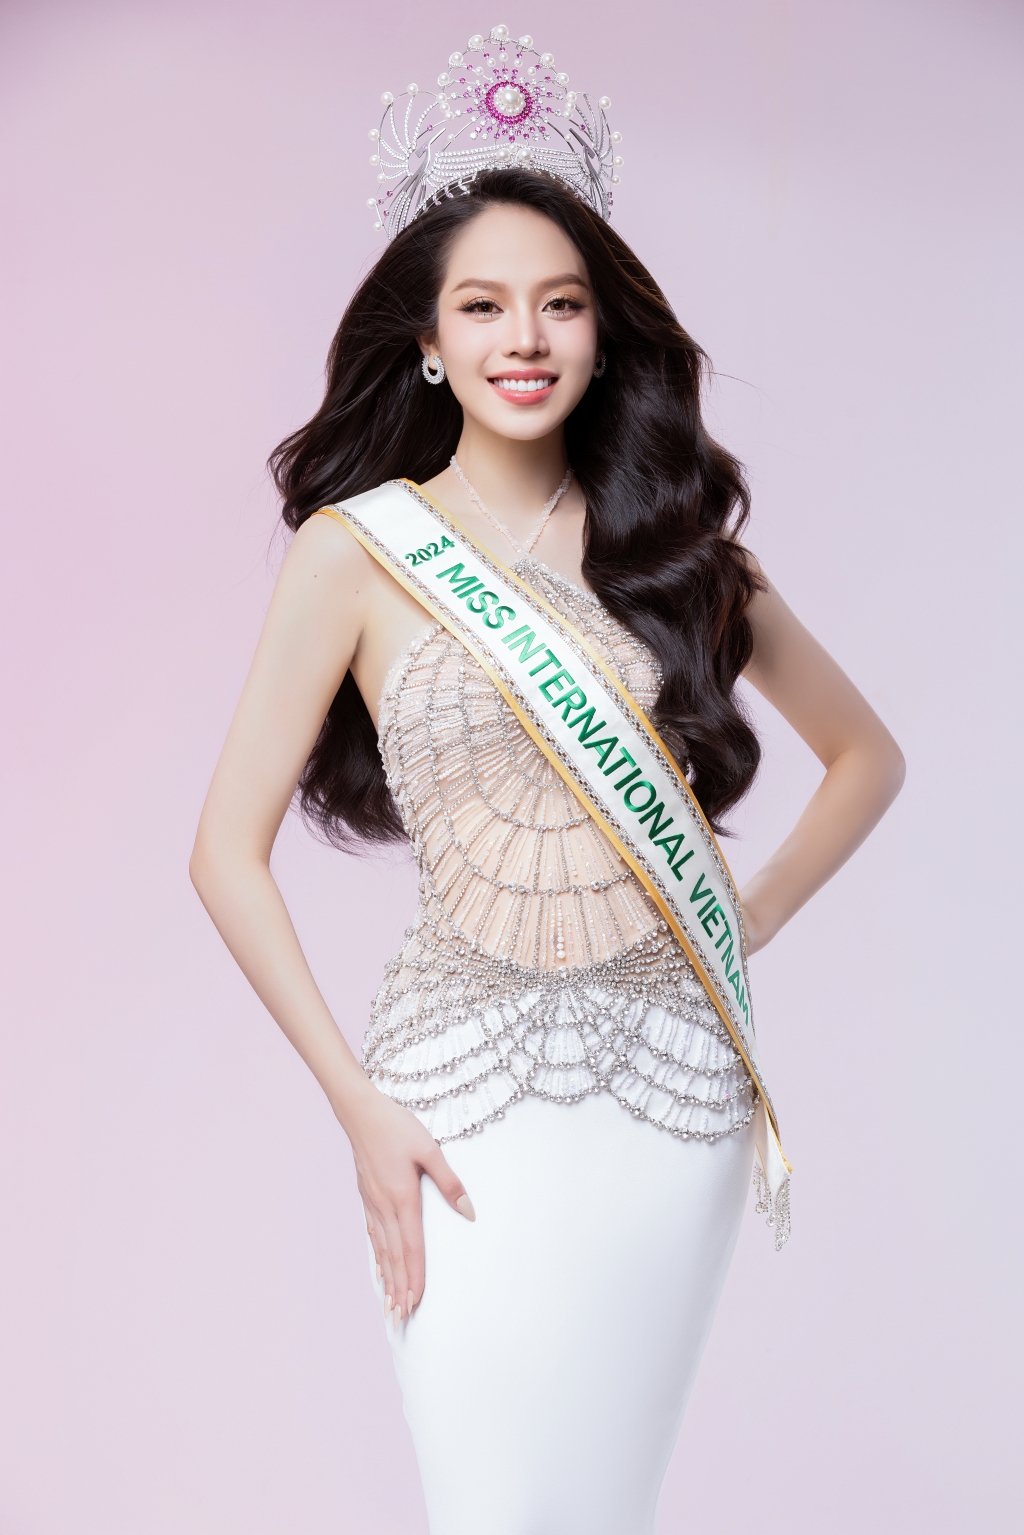 Đương kim Hoa hậu Việt Nam mừng sinh nhật tuổi 22, sẵn sàng đi thi quốc tế